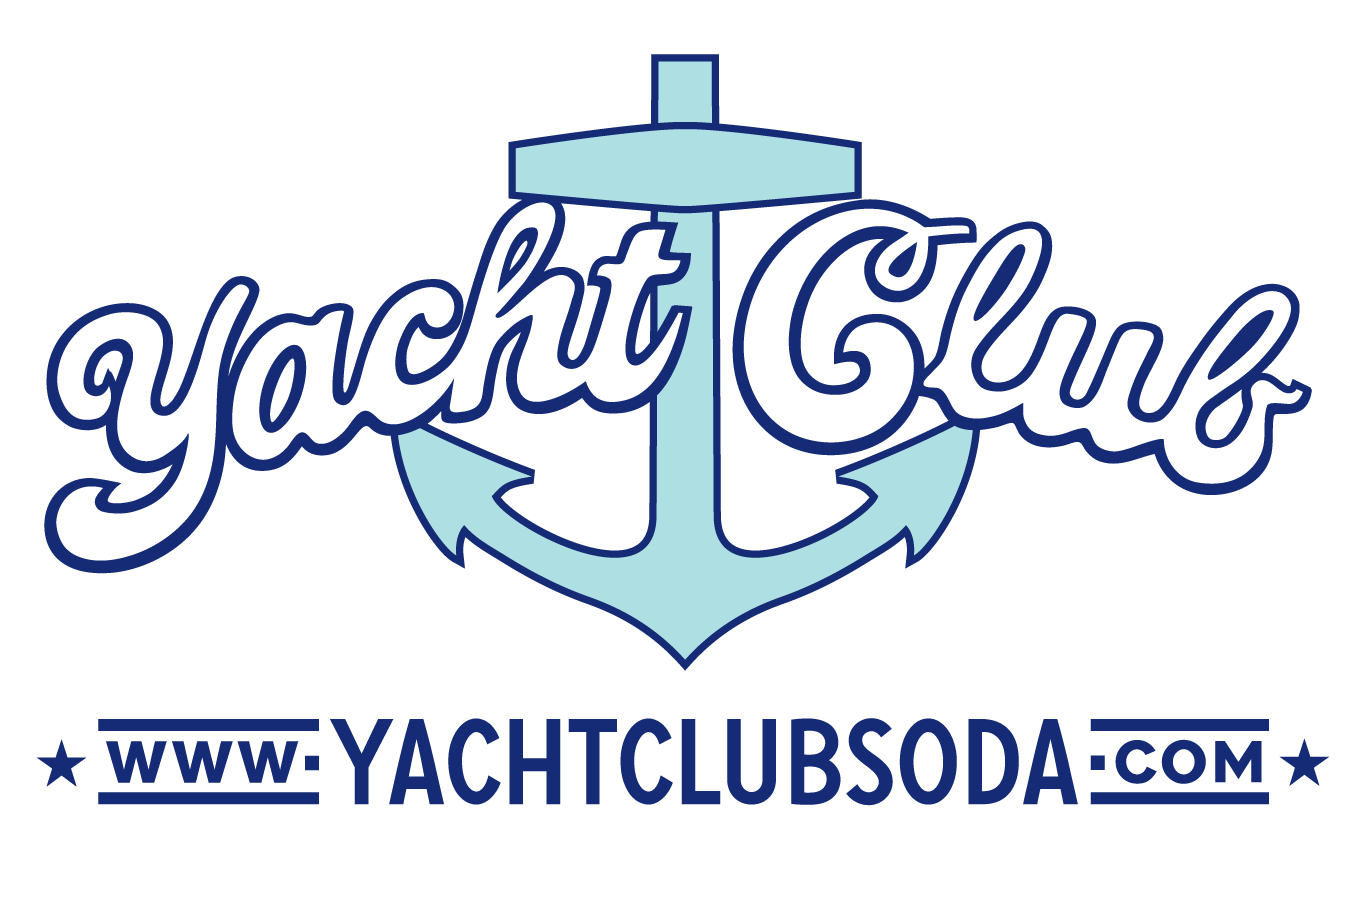 yacht club bottling works inc